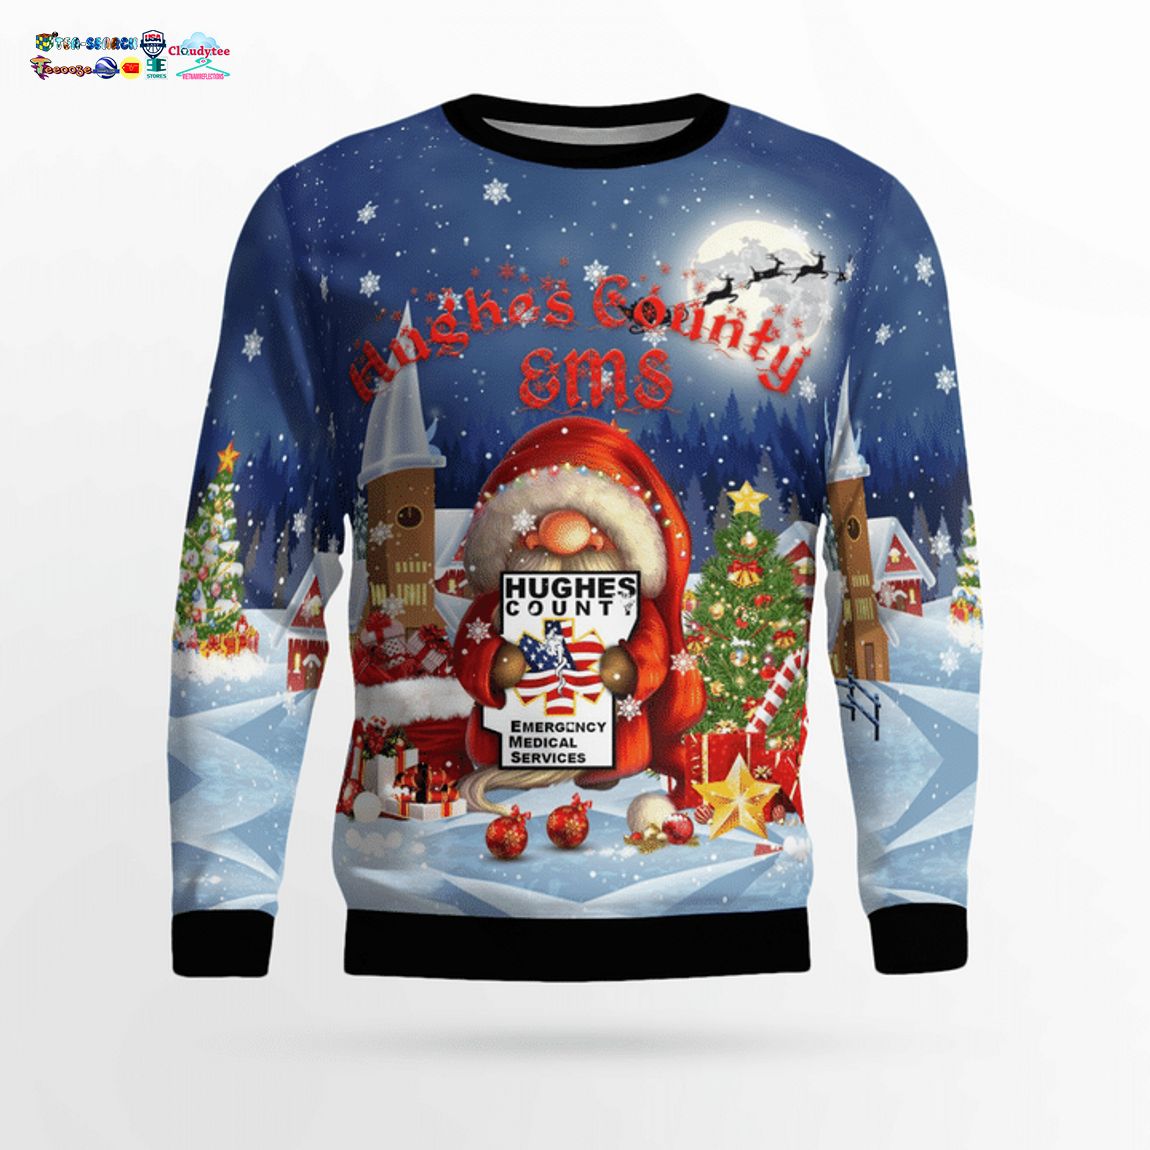 Gnome Hughes County EMS Ver 1 3D Christmas Sweater - Saleoff